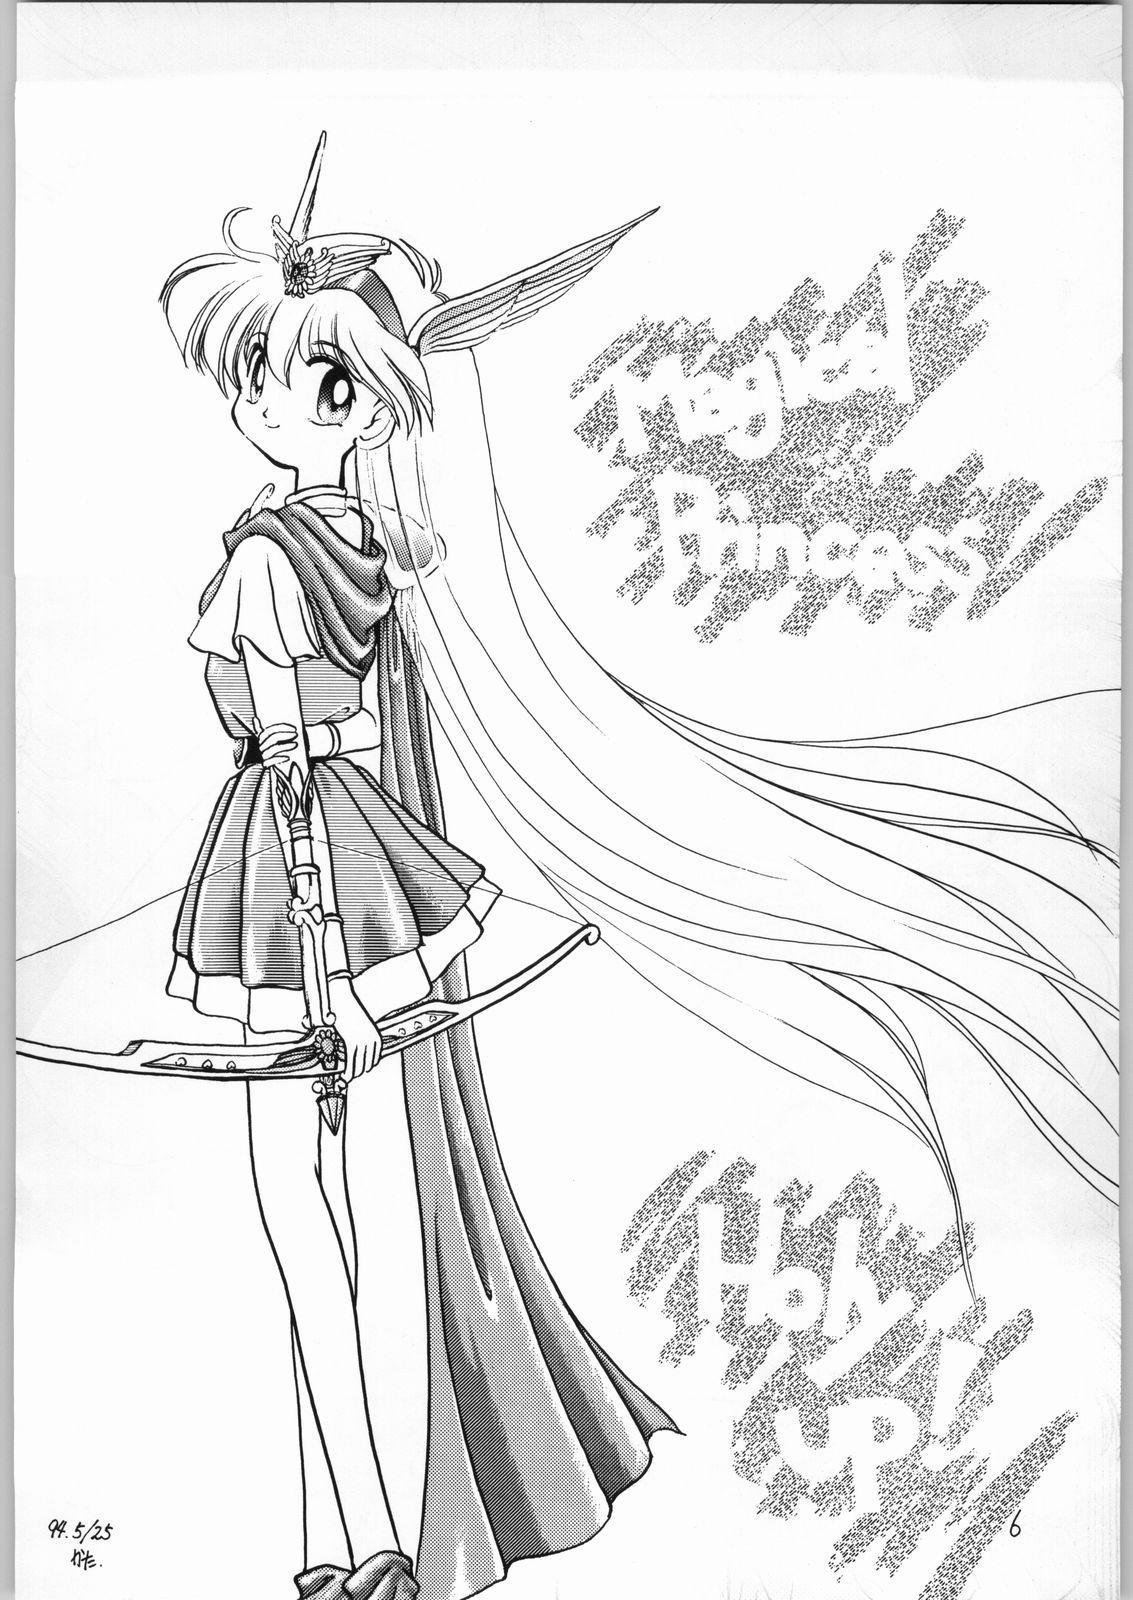 Fodendo Dance of Princess 3 - Sailor moon Tenchi muyo Akazukin cha cha Minky momo Ng knight lamune and 40 Adorable - Page 5